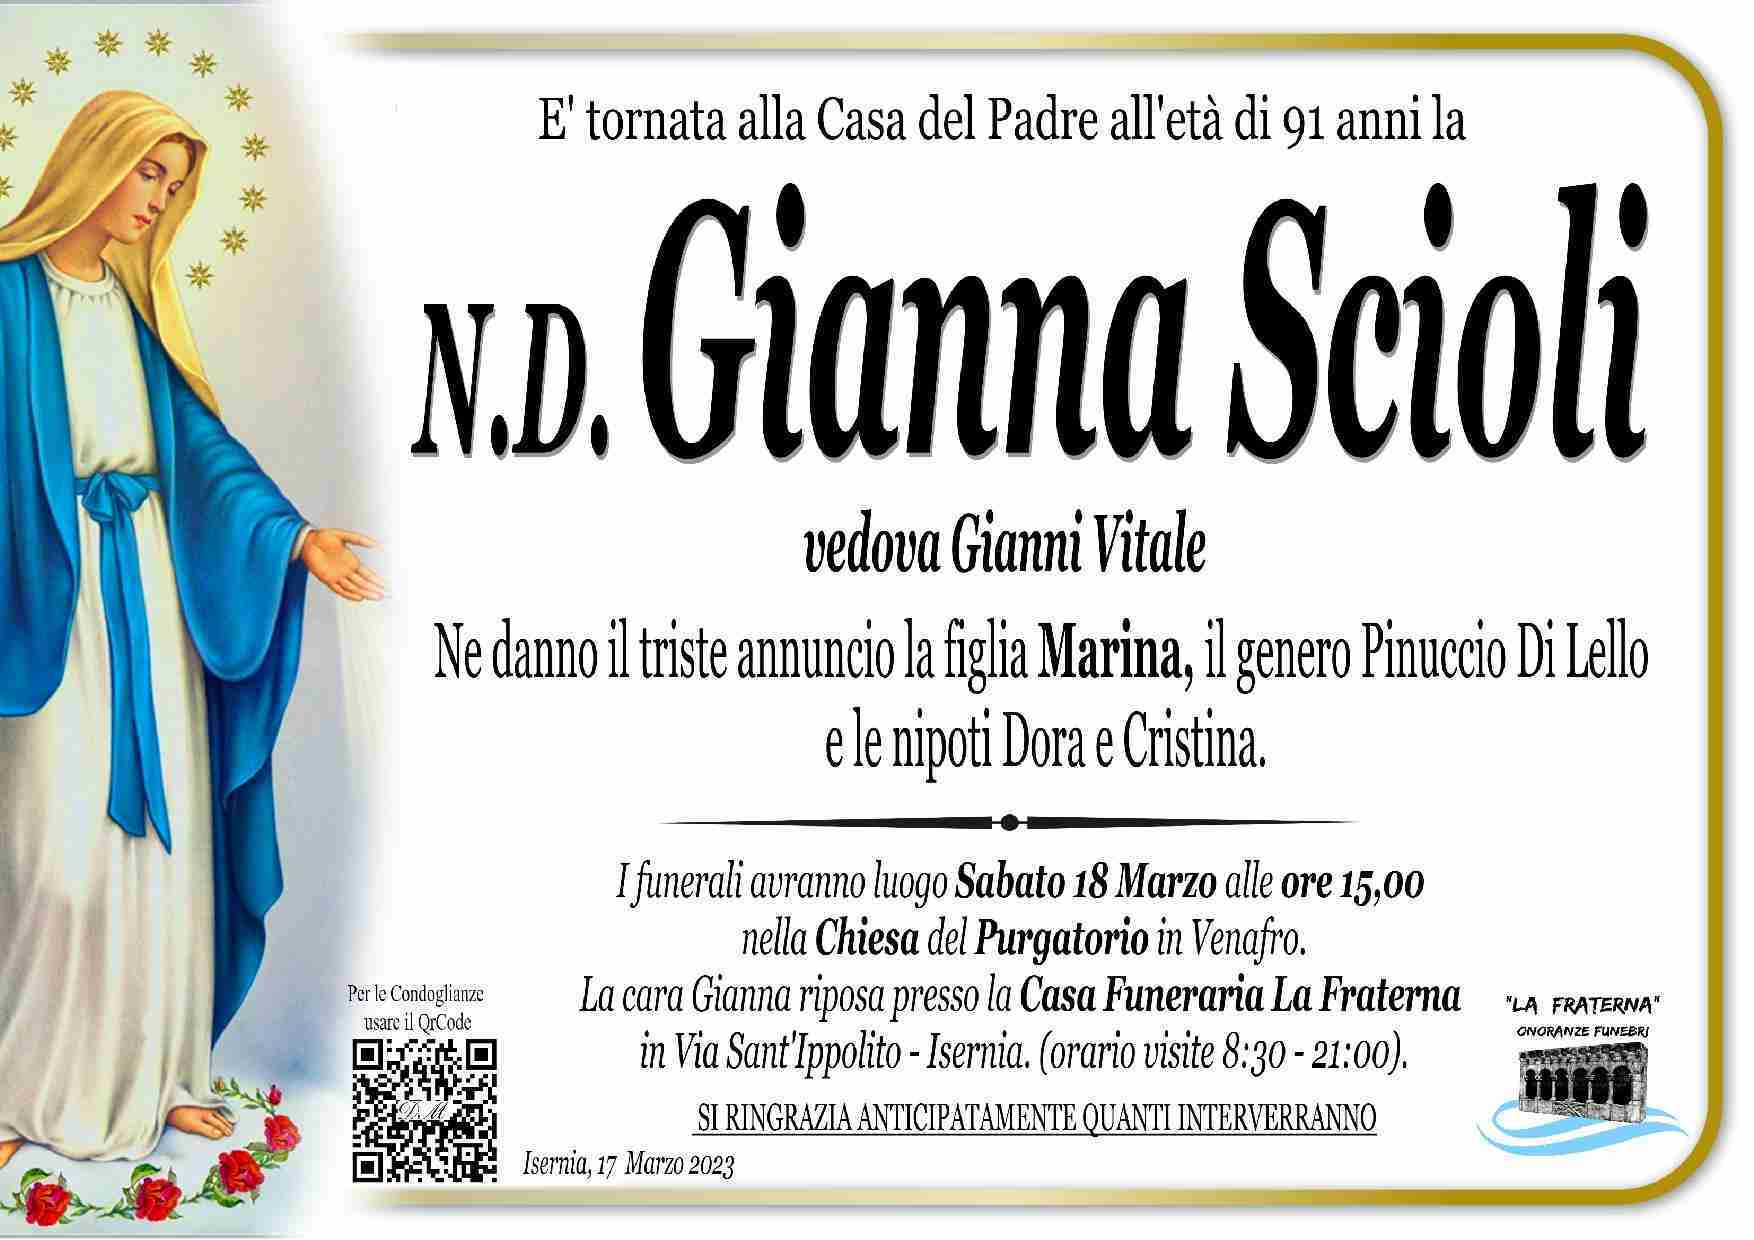 Gianna Scioli